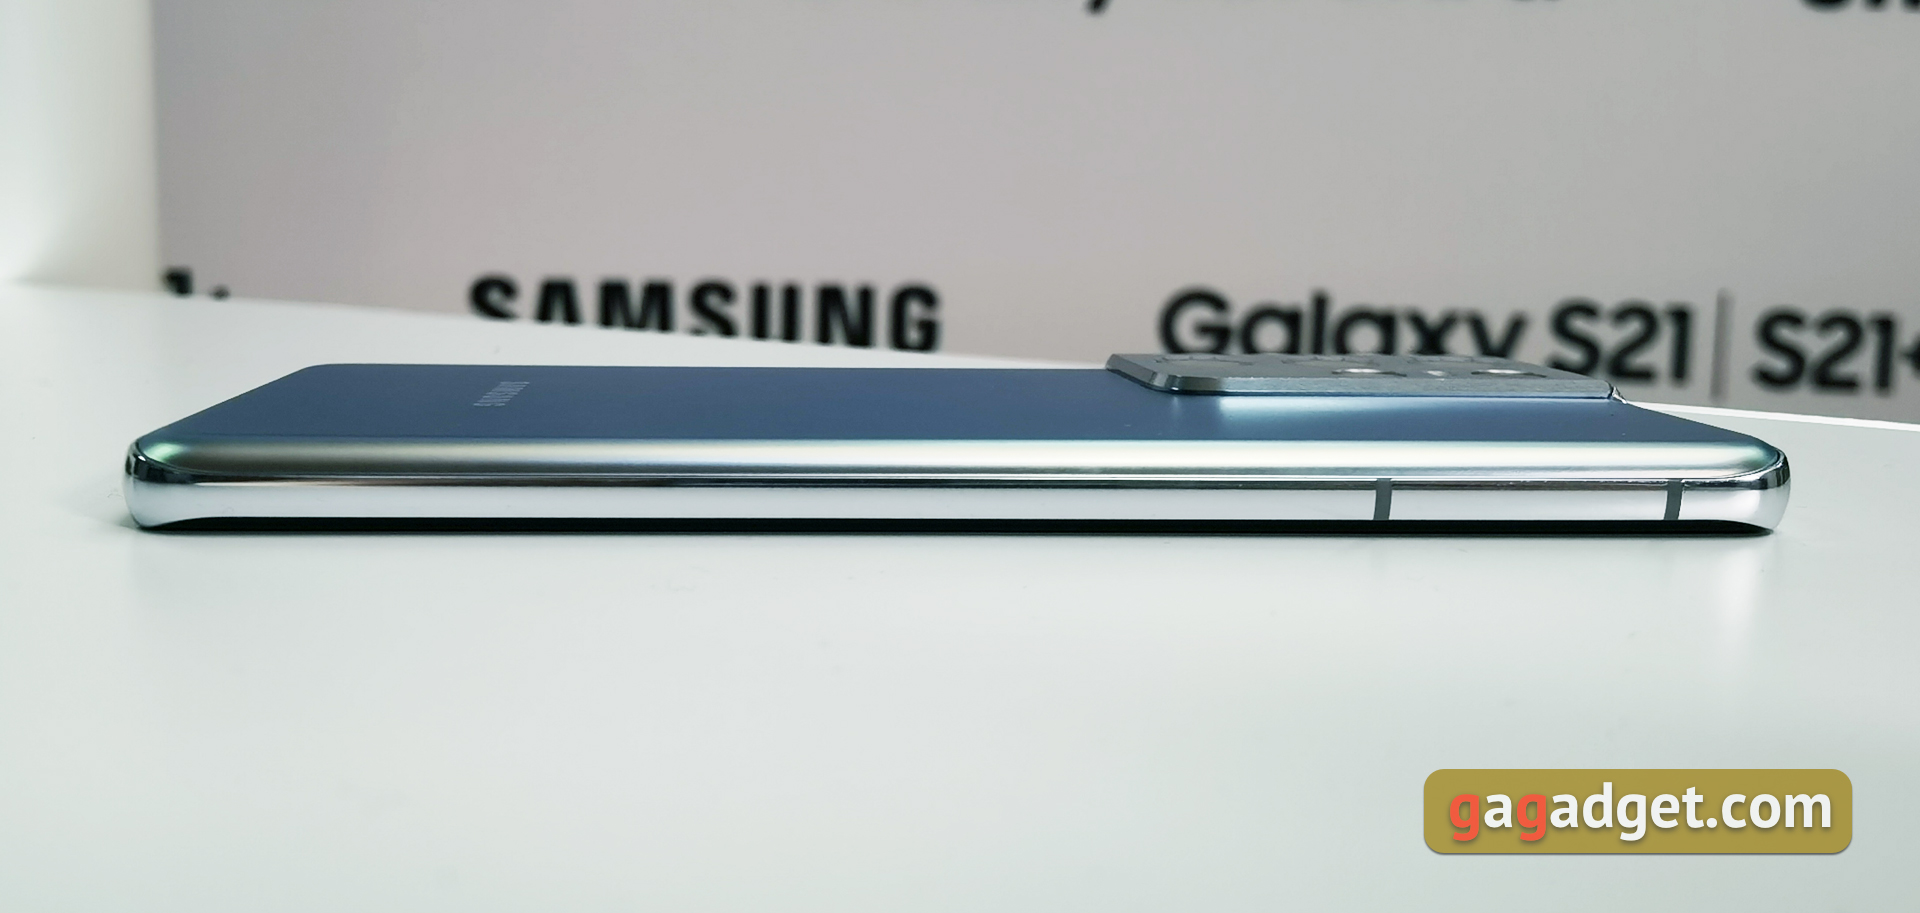 Флагманская линейка Samsung Galaxy S21 и наушники Galaxy Buds Pro своими глазами-13